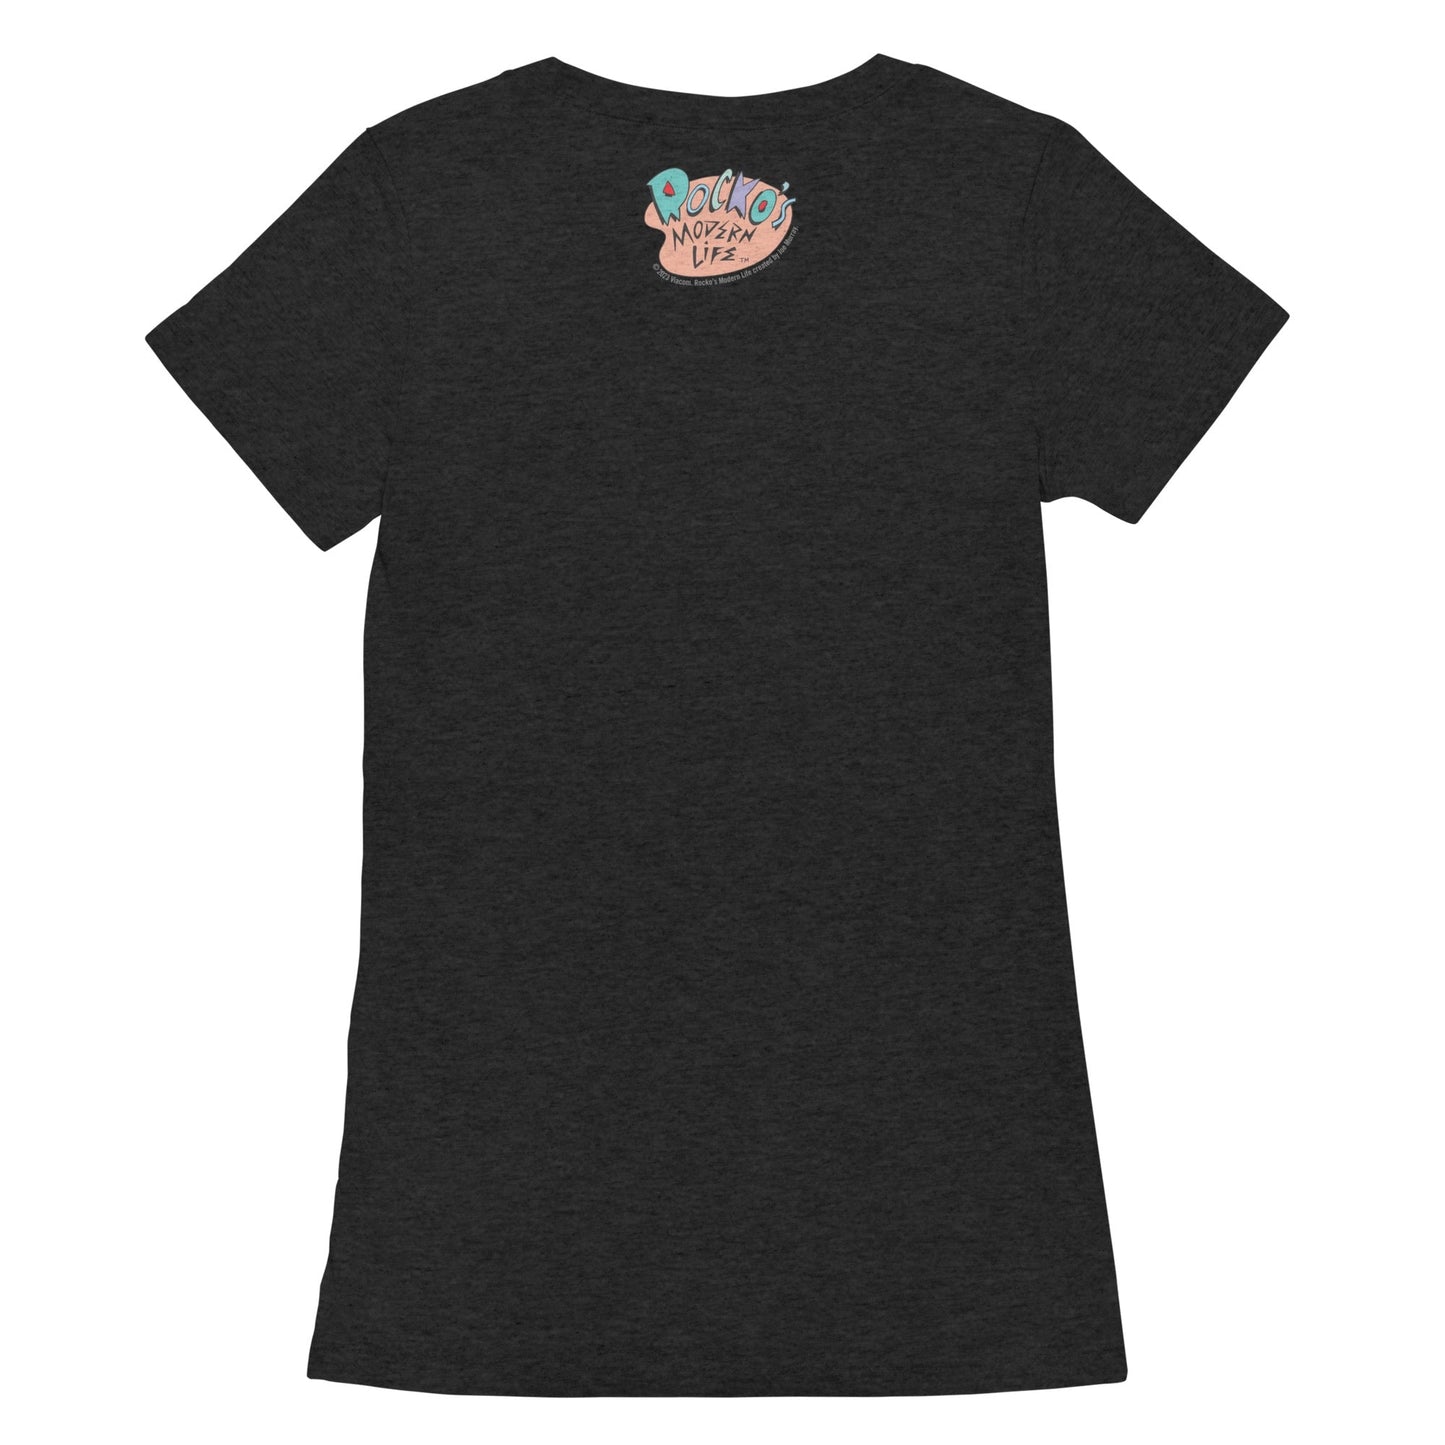 Rocko's Modern Life Wallaby's Best Friend Women's Triblend T - Shirt - Paramount Shop